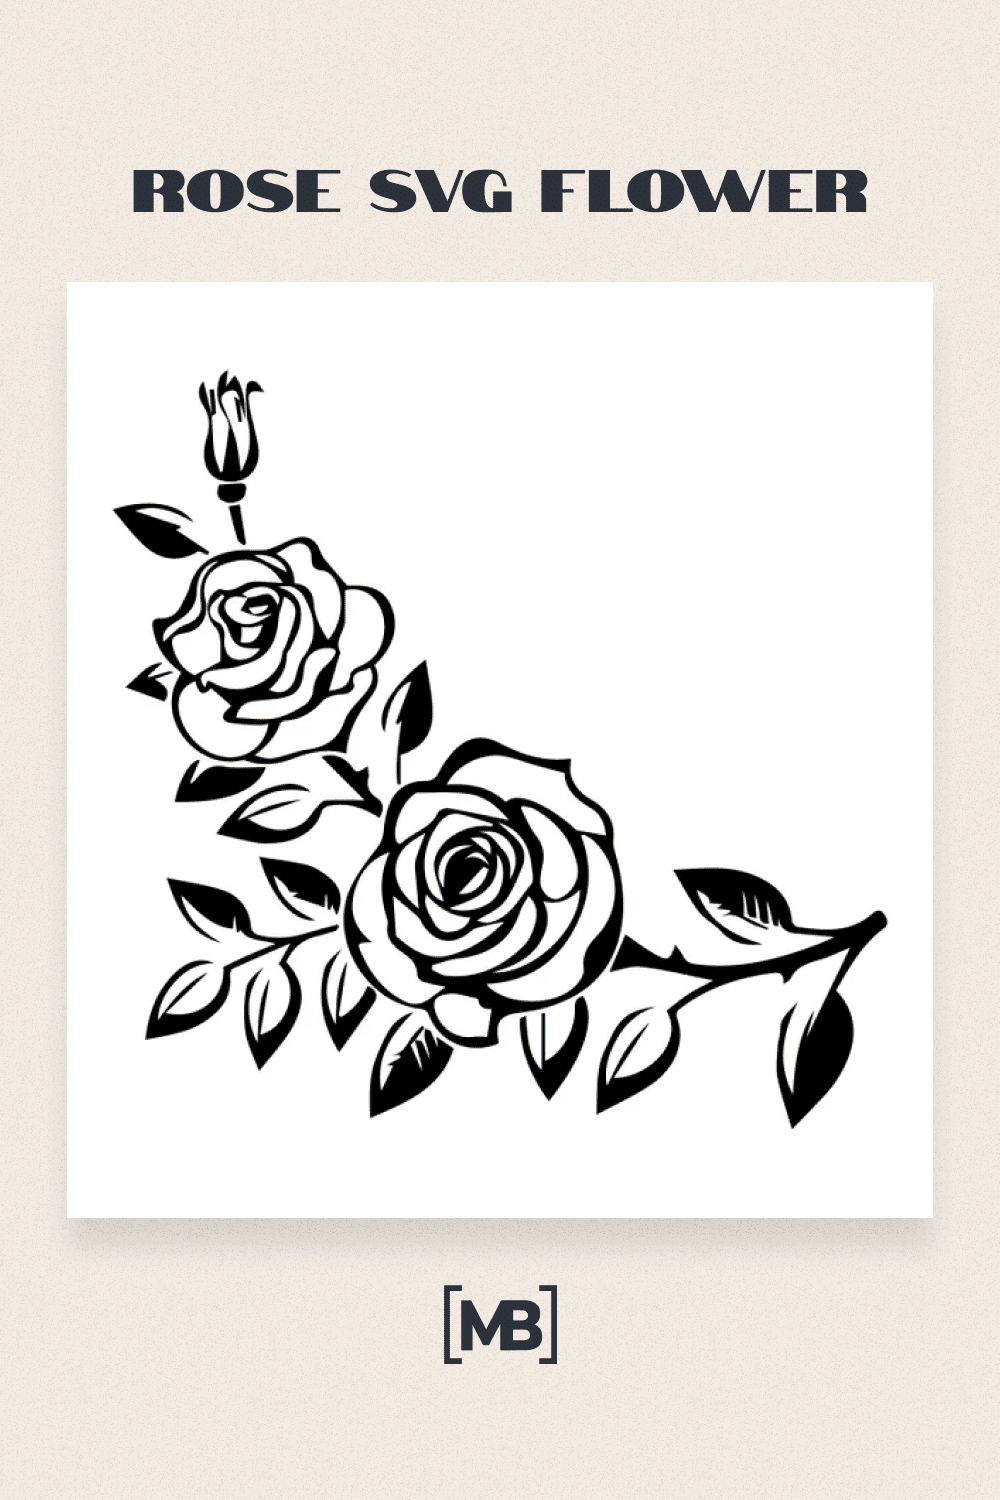 Rose SVG Flower.